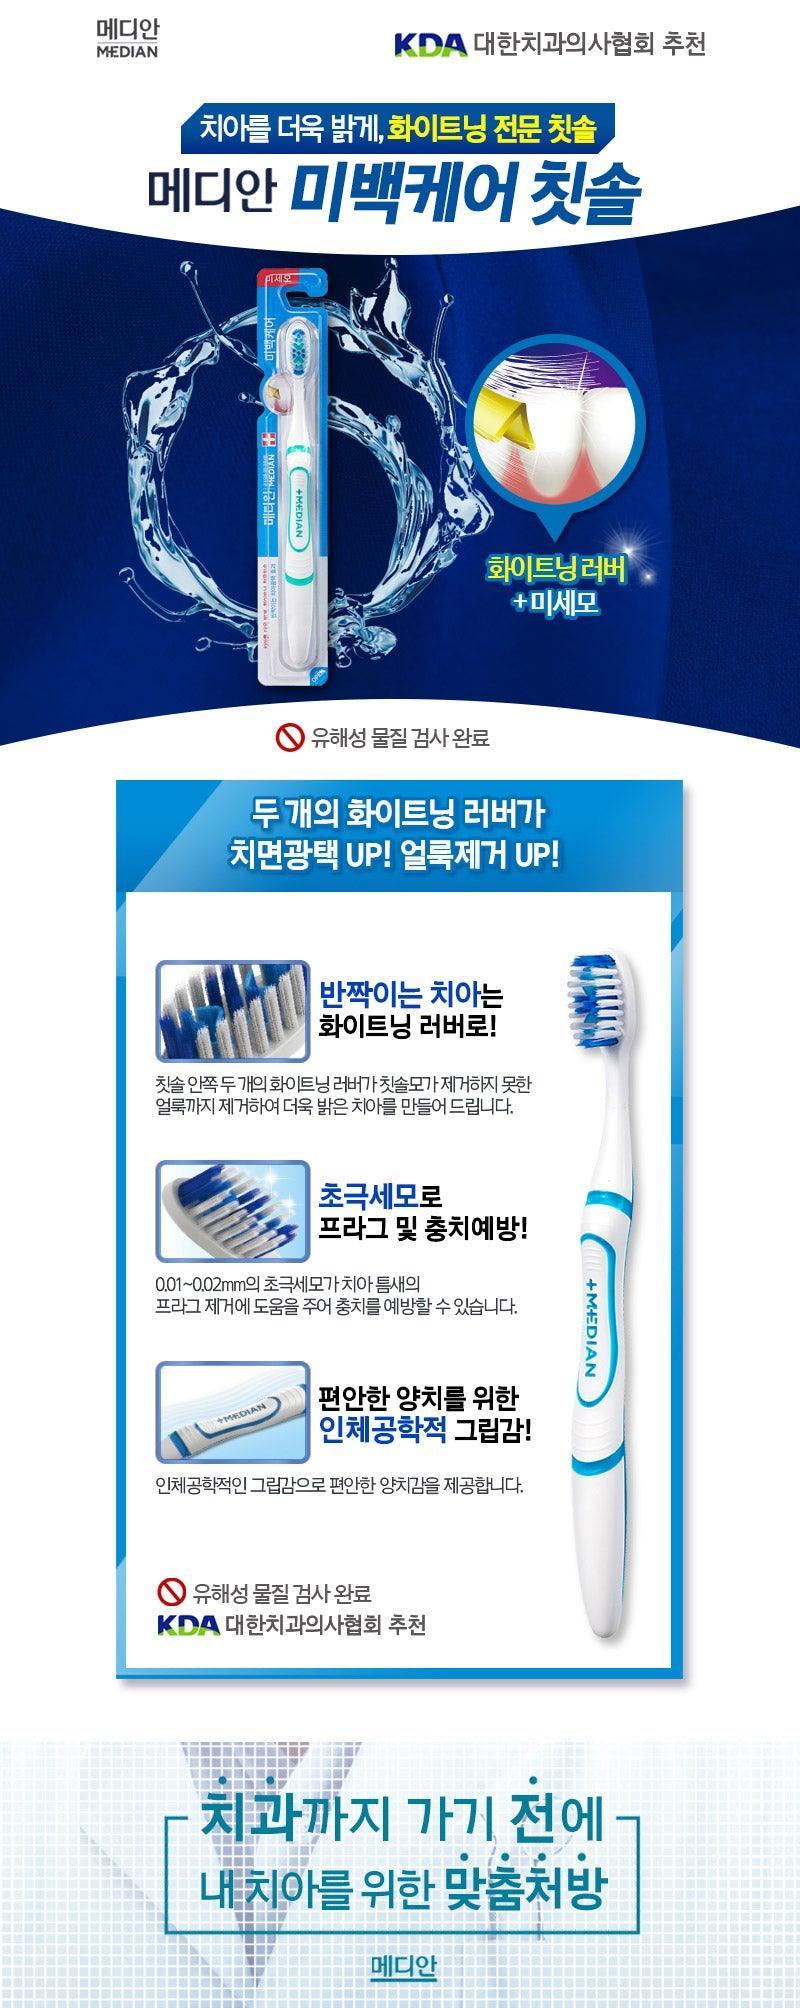 Bàn Chải Đánh Răng Median Whitening Care Toothbrush - Kallos Vietnam